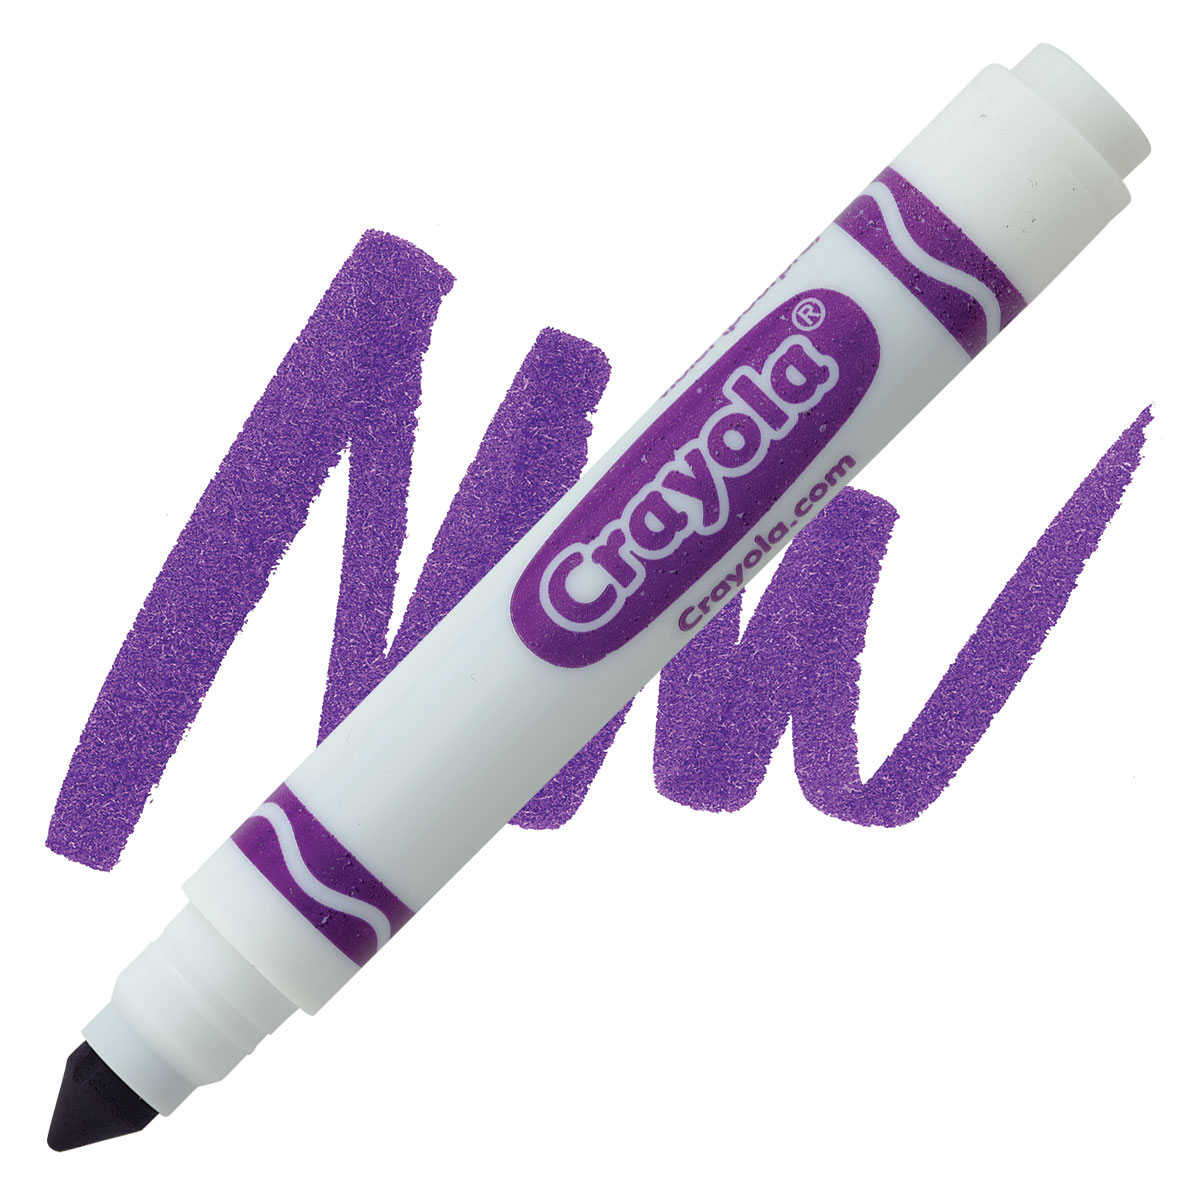 one purple crayola marker